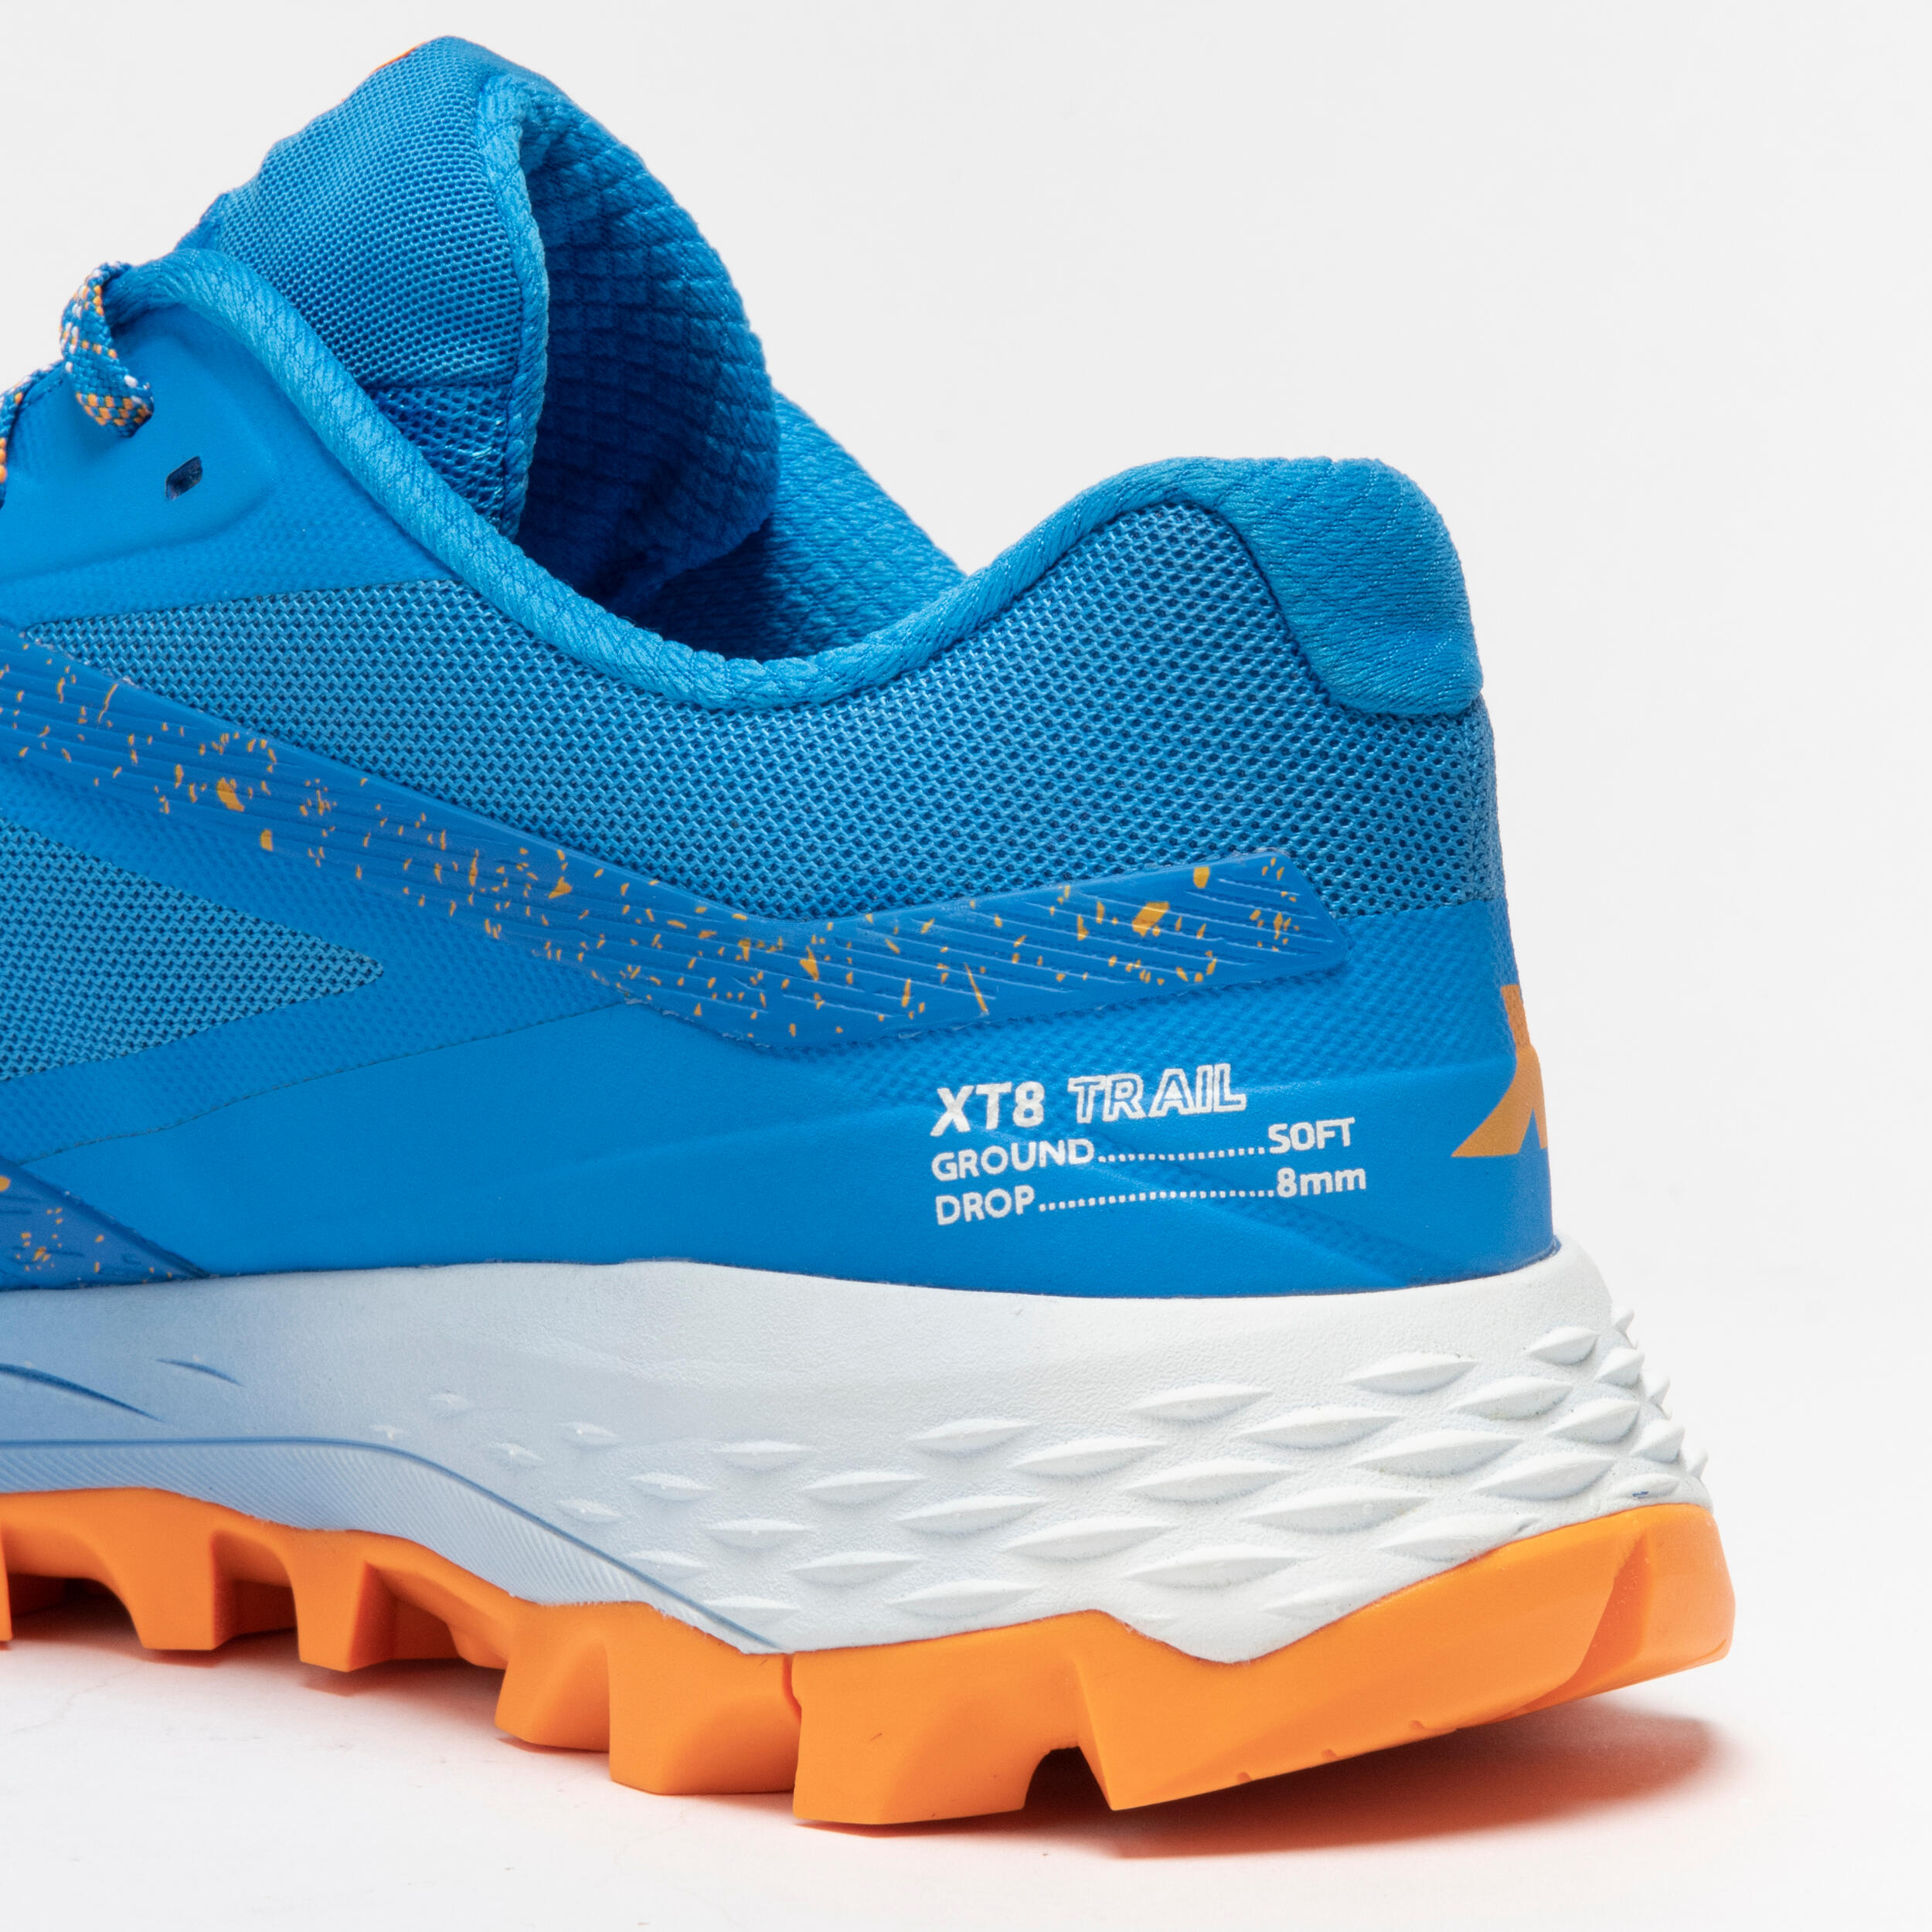 Chaussures de course en sentier pour homme - XT8 bleu et orange - EVADICT